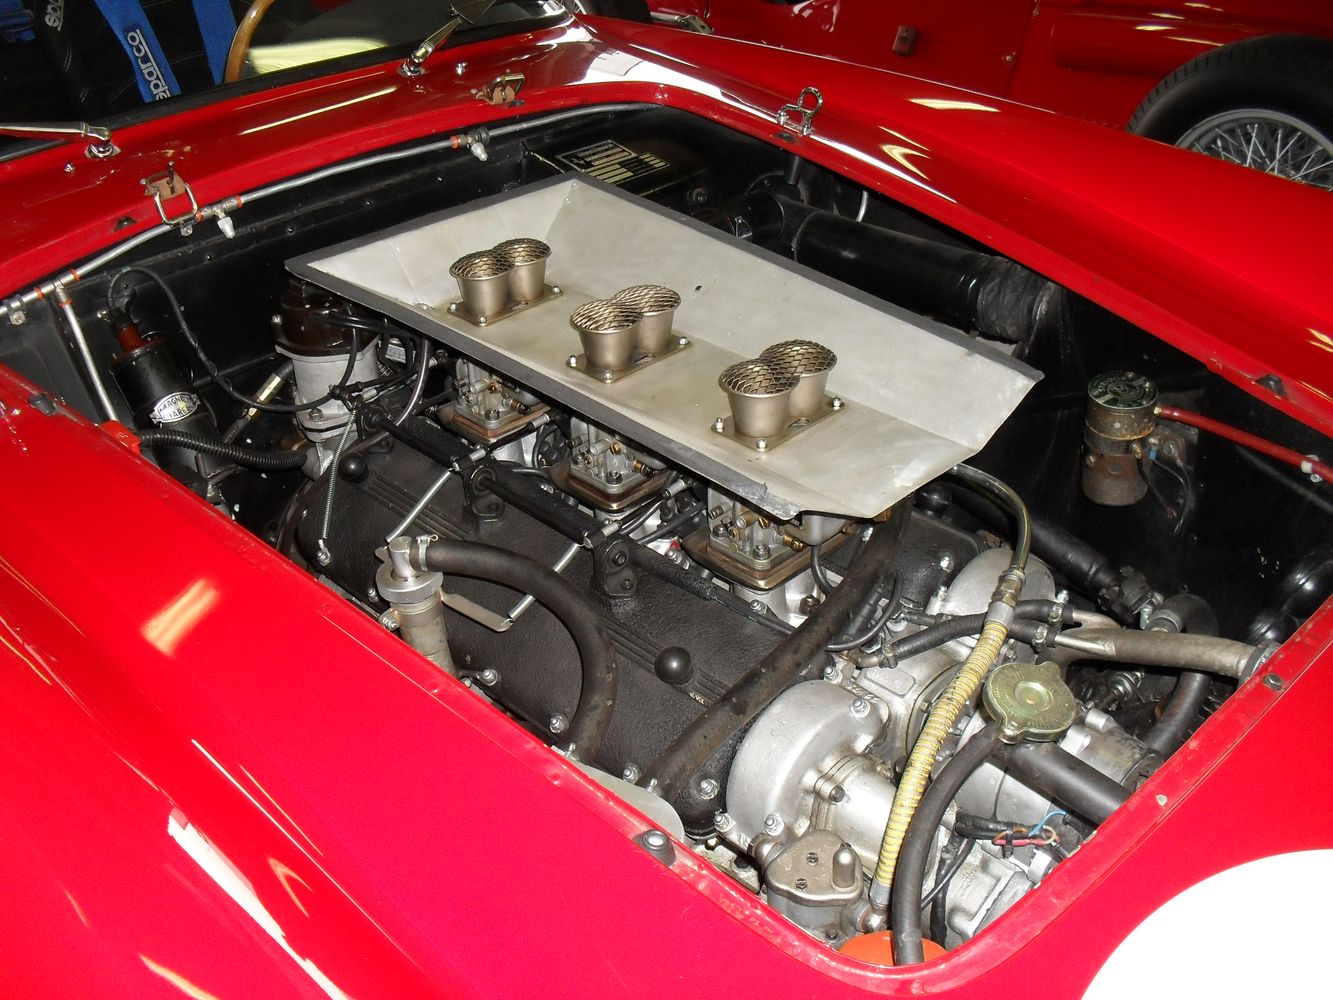 Ferrari_250_GT_TdF